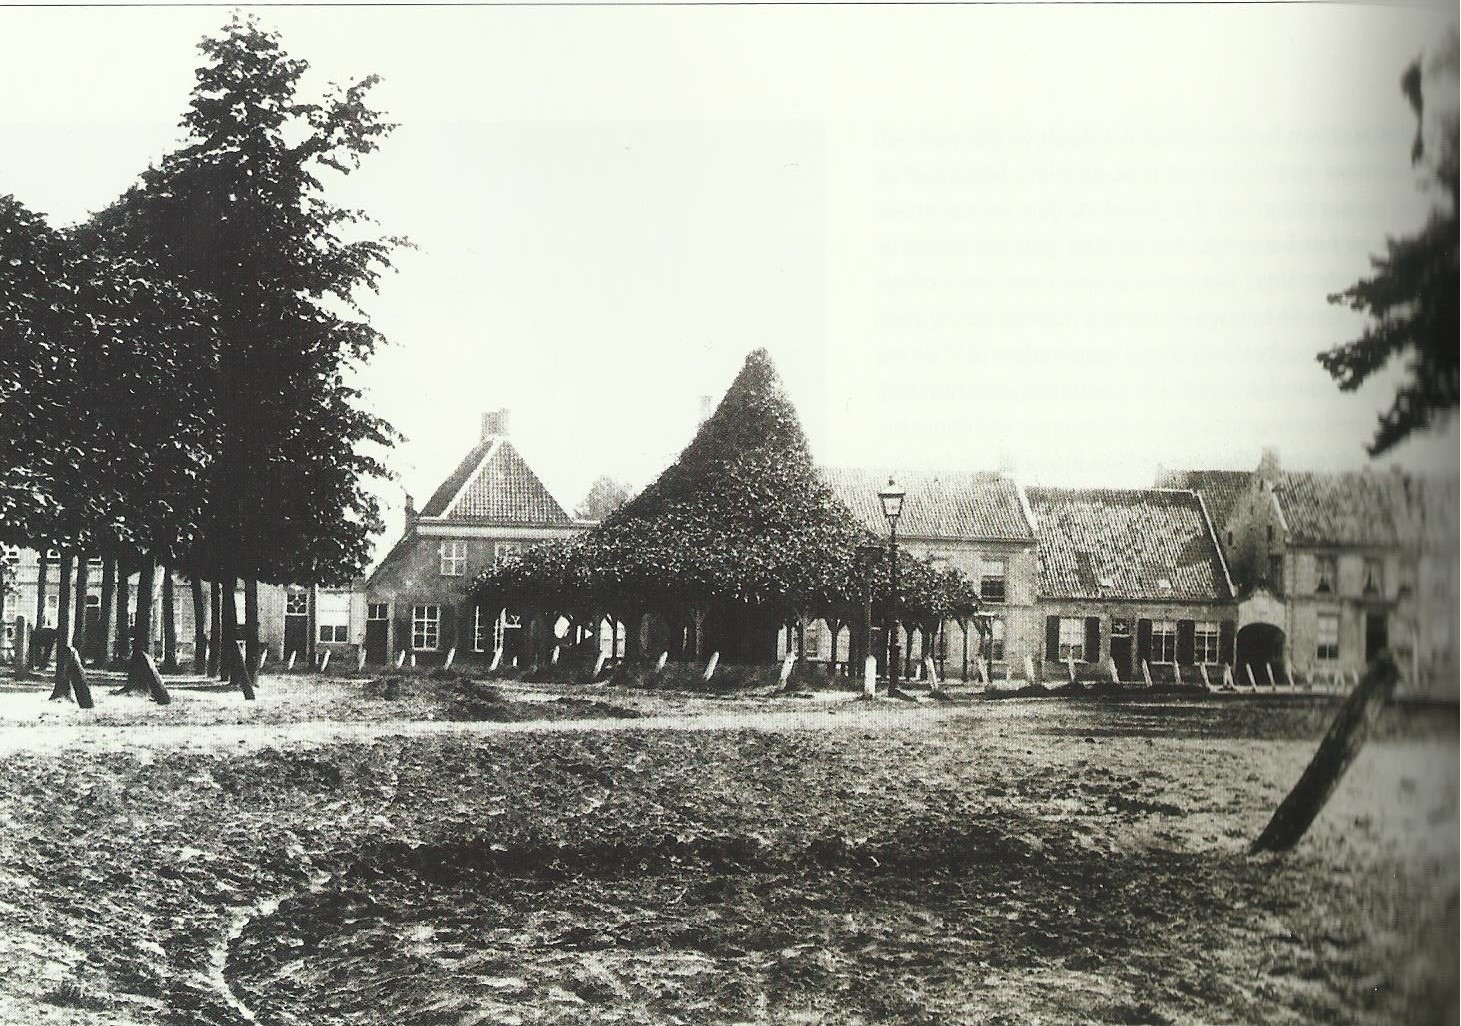 Links van de lindeboom de bakkerij van Knegtel.